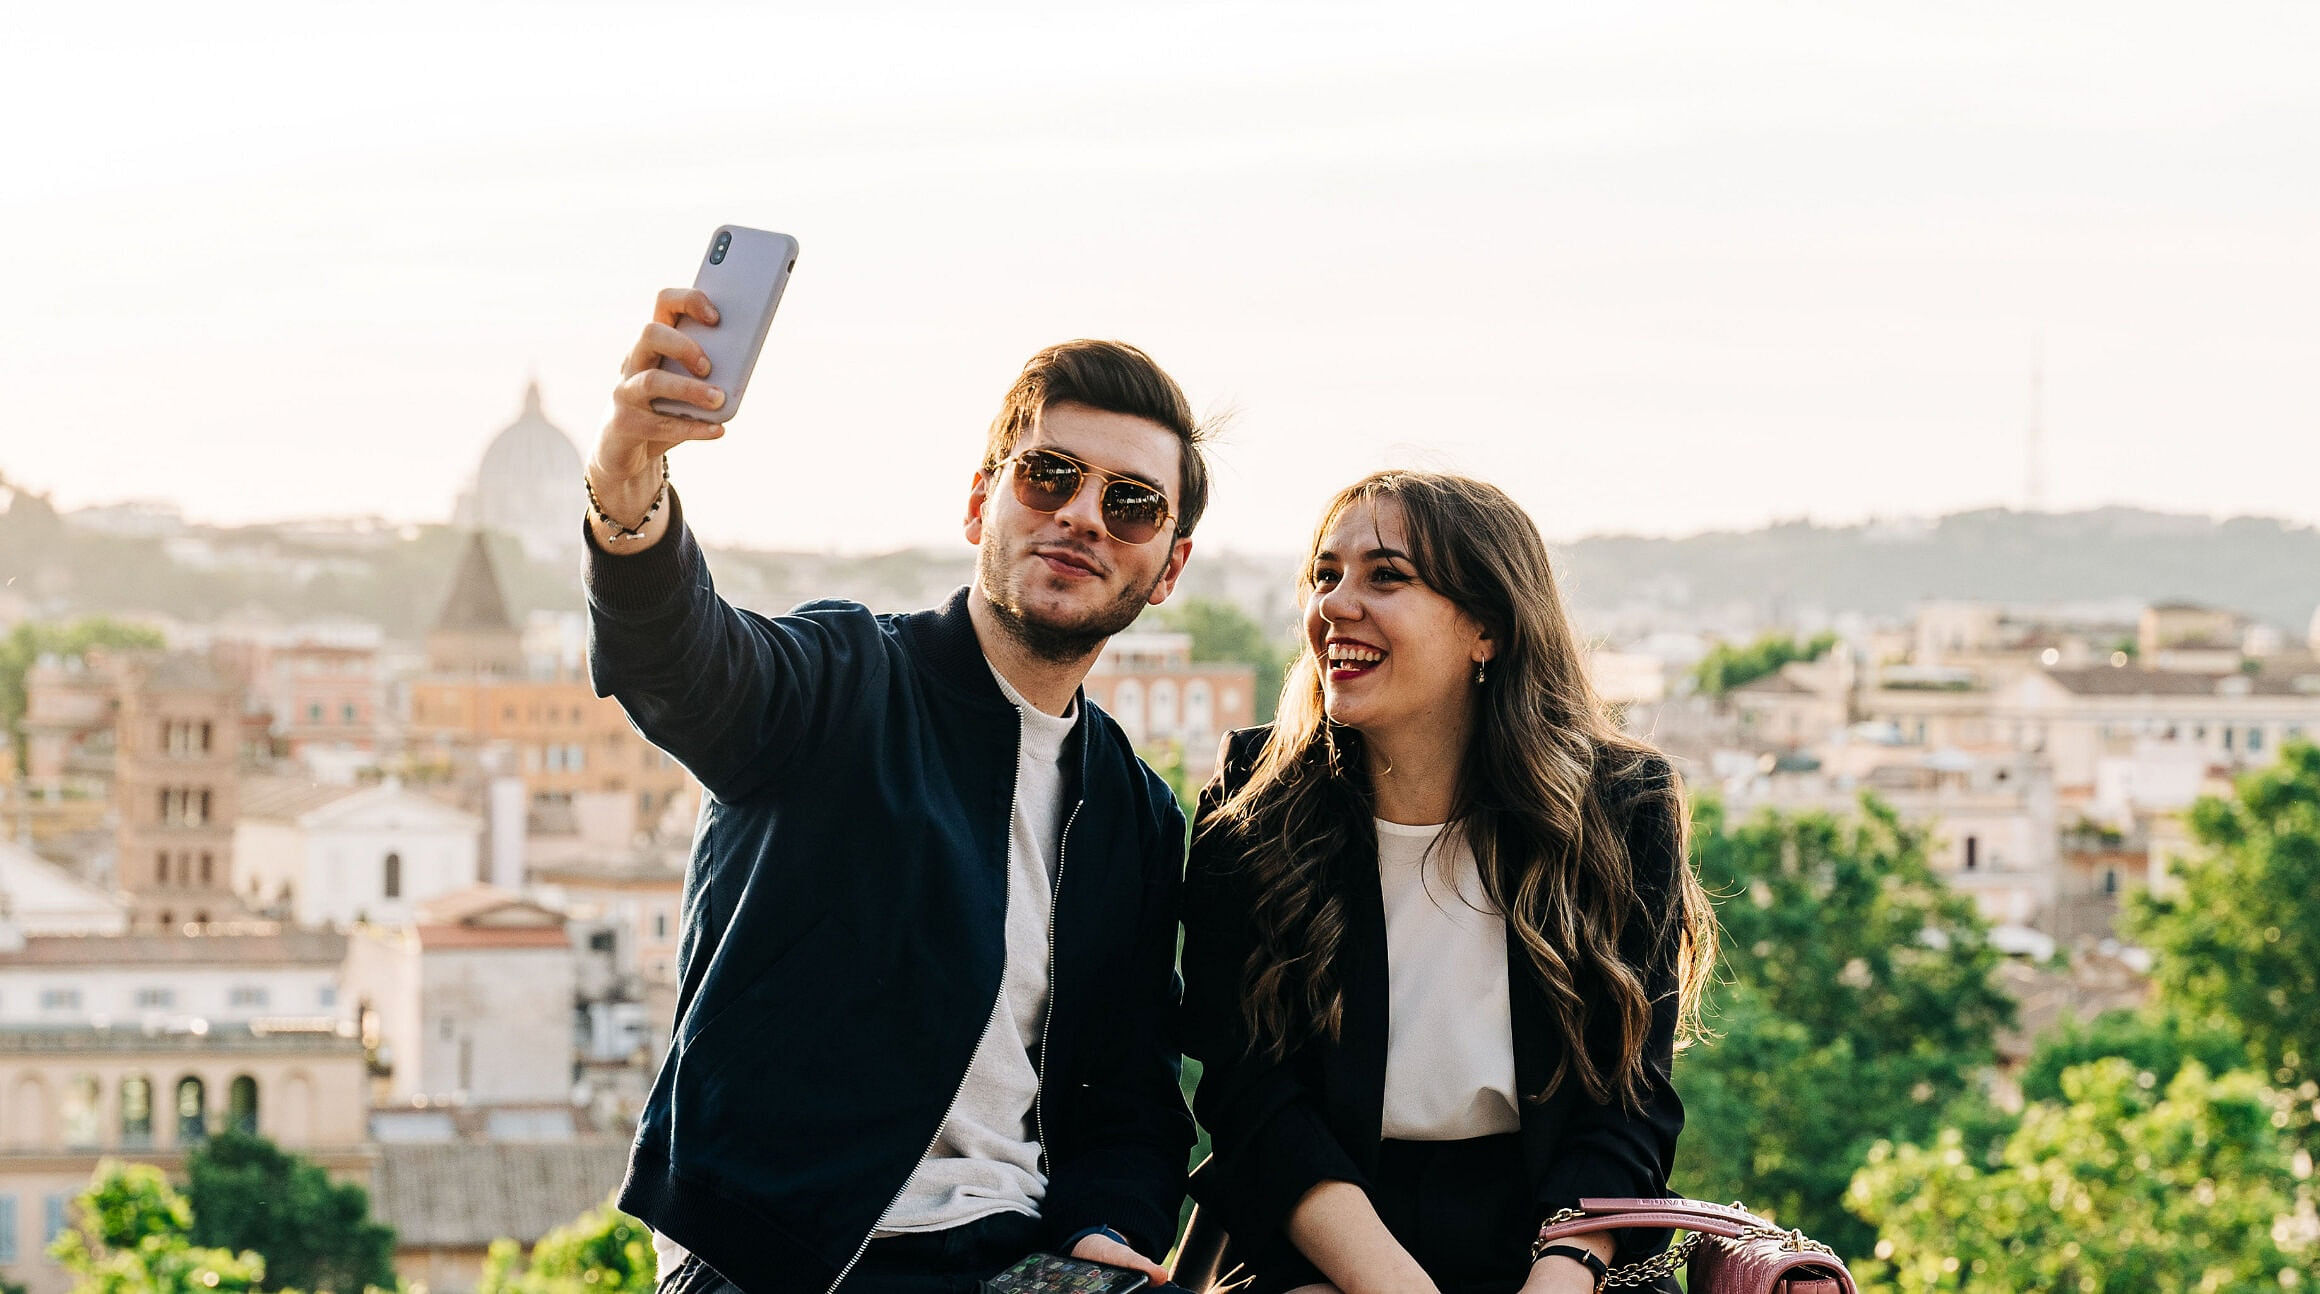 Friends taking a selfie in Rome